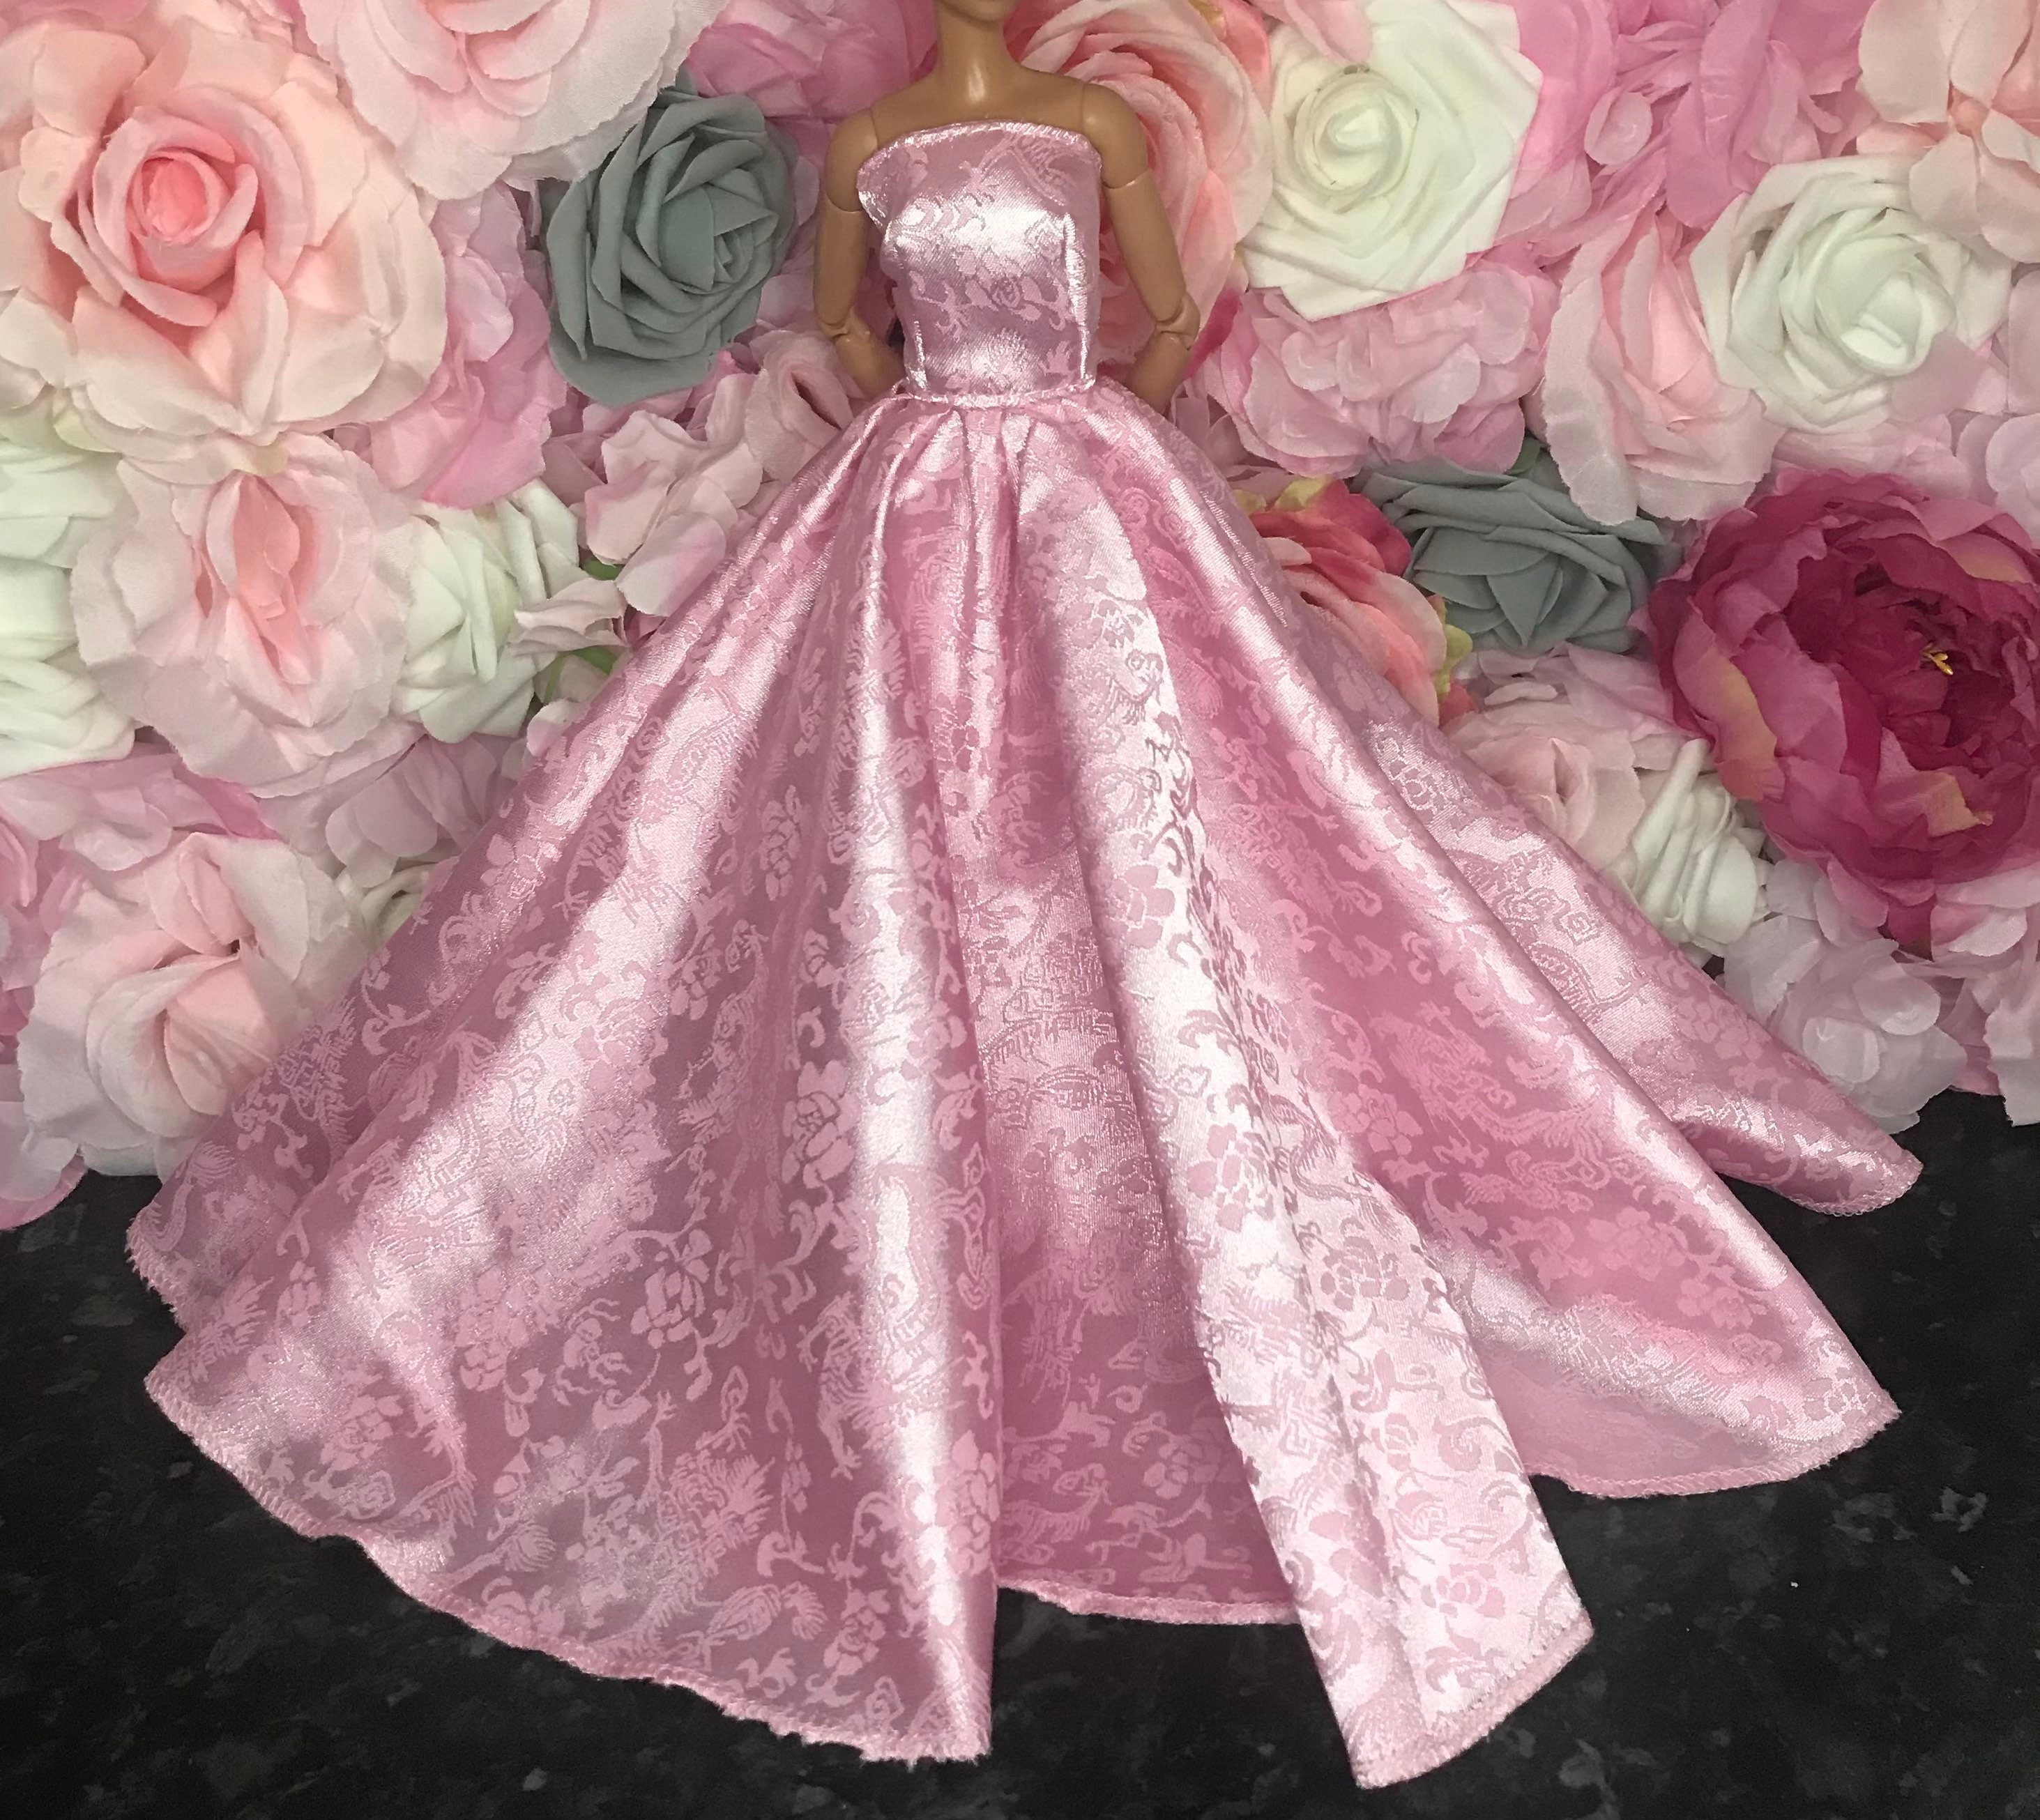 Barbie Dress For Girls Size 5 | eBay